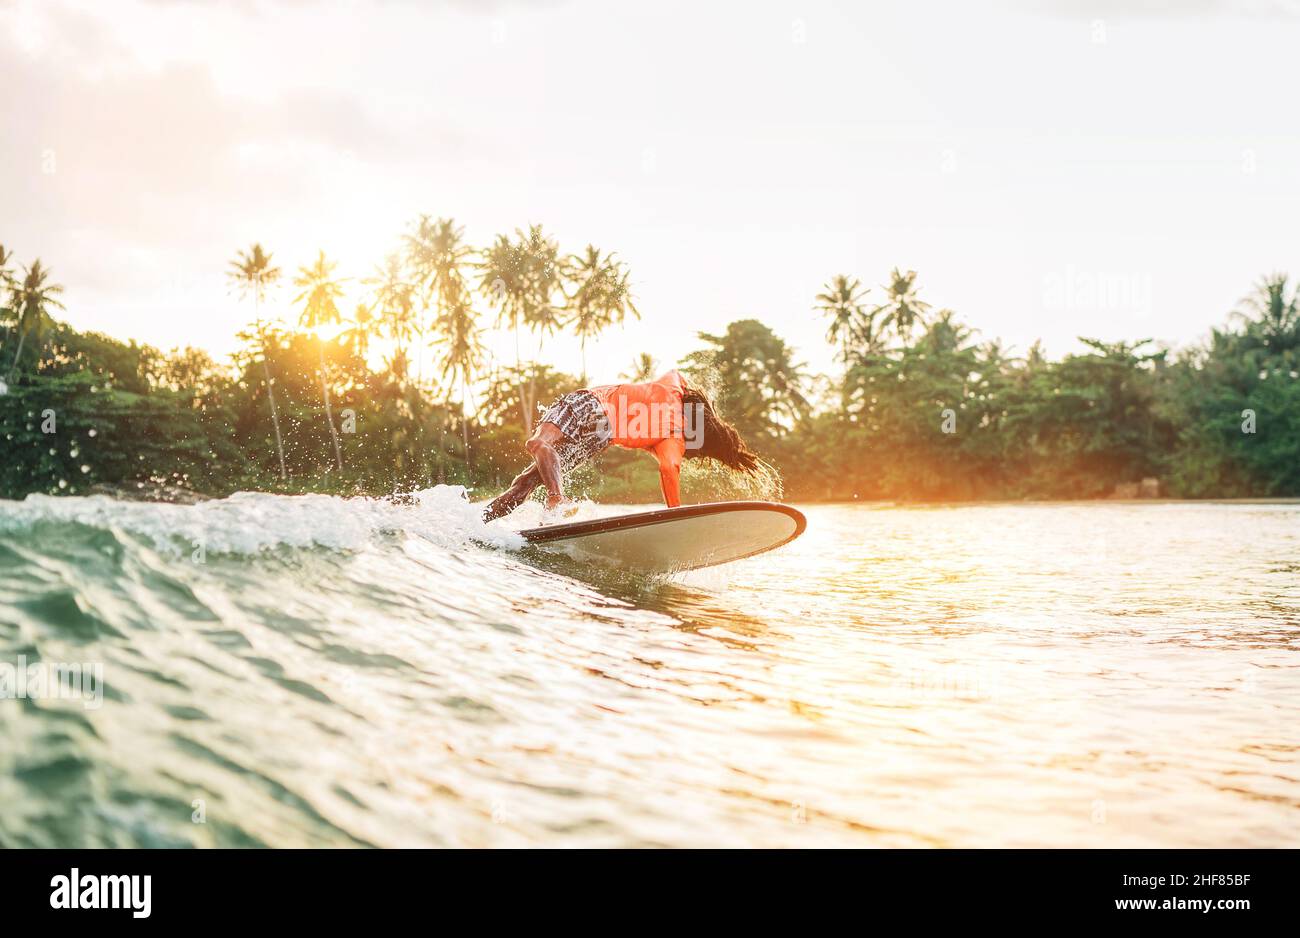 Schwarzer langhaariger Teenager-Junge, der von einem langen Surfbrett reitet und springt. Er fing eine Welle in einer Bucht des indischen Ozeans mit magischem Sonnenuntergang Hintergrund. Extreme Wa Stockfoto